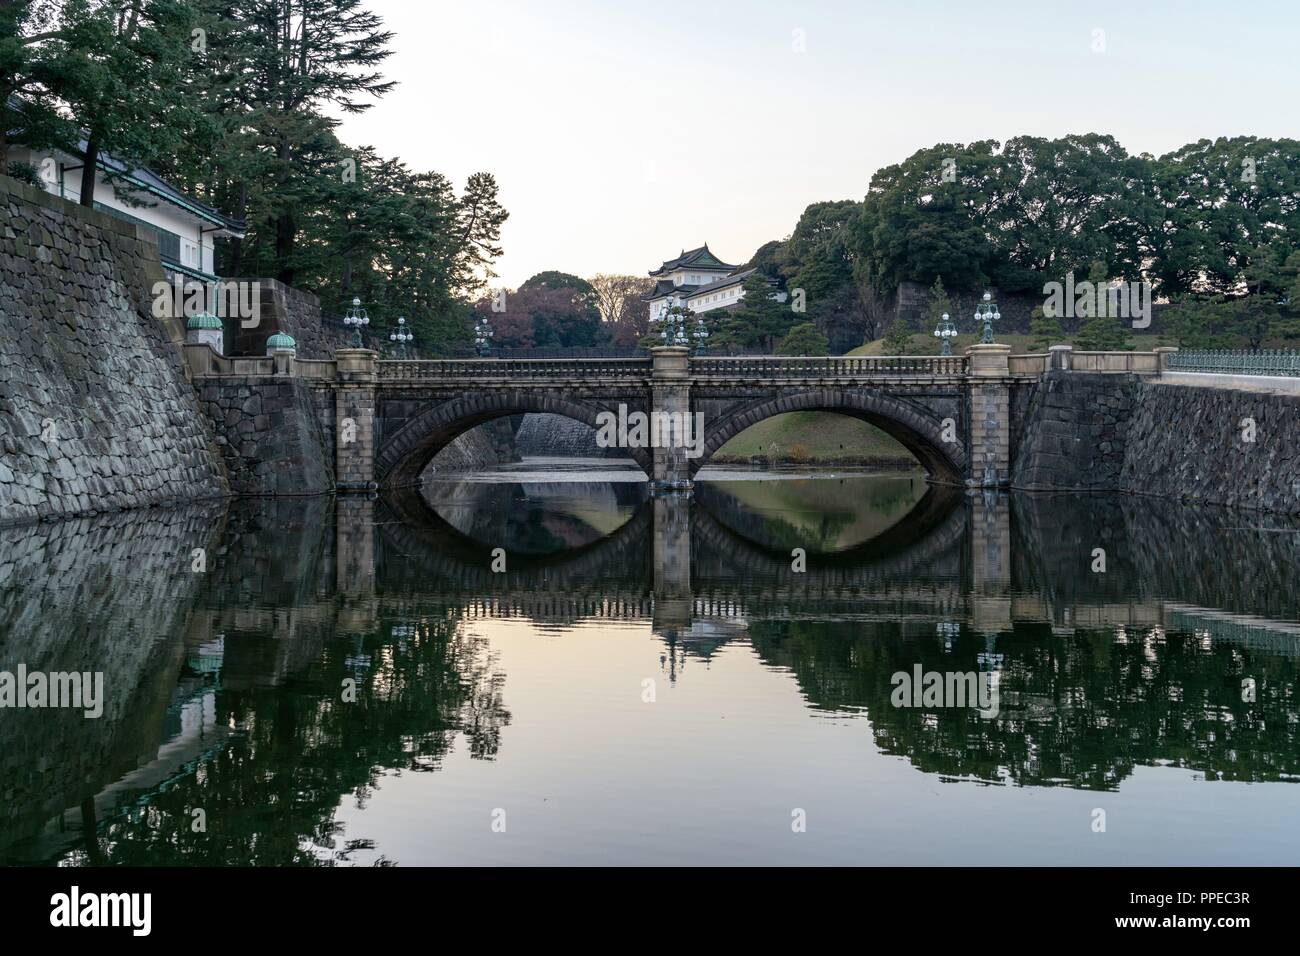 Japan: seimon Ishibashi Brücke, führt zu den wichtigsten Tor des Imperial Palace. Foto vom 22. Dezember 2017. | Verwendung weltweit Stockfoto